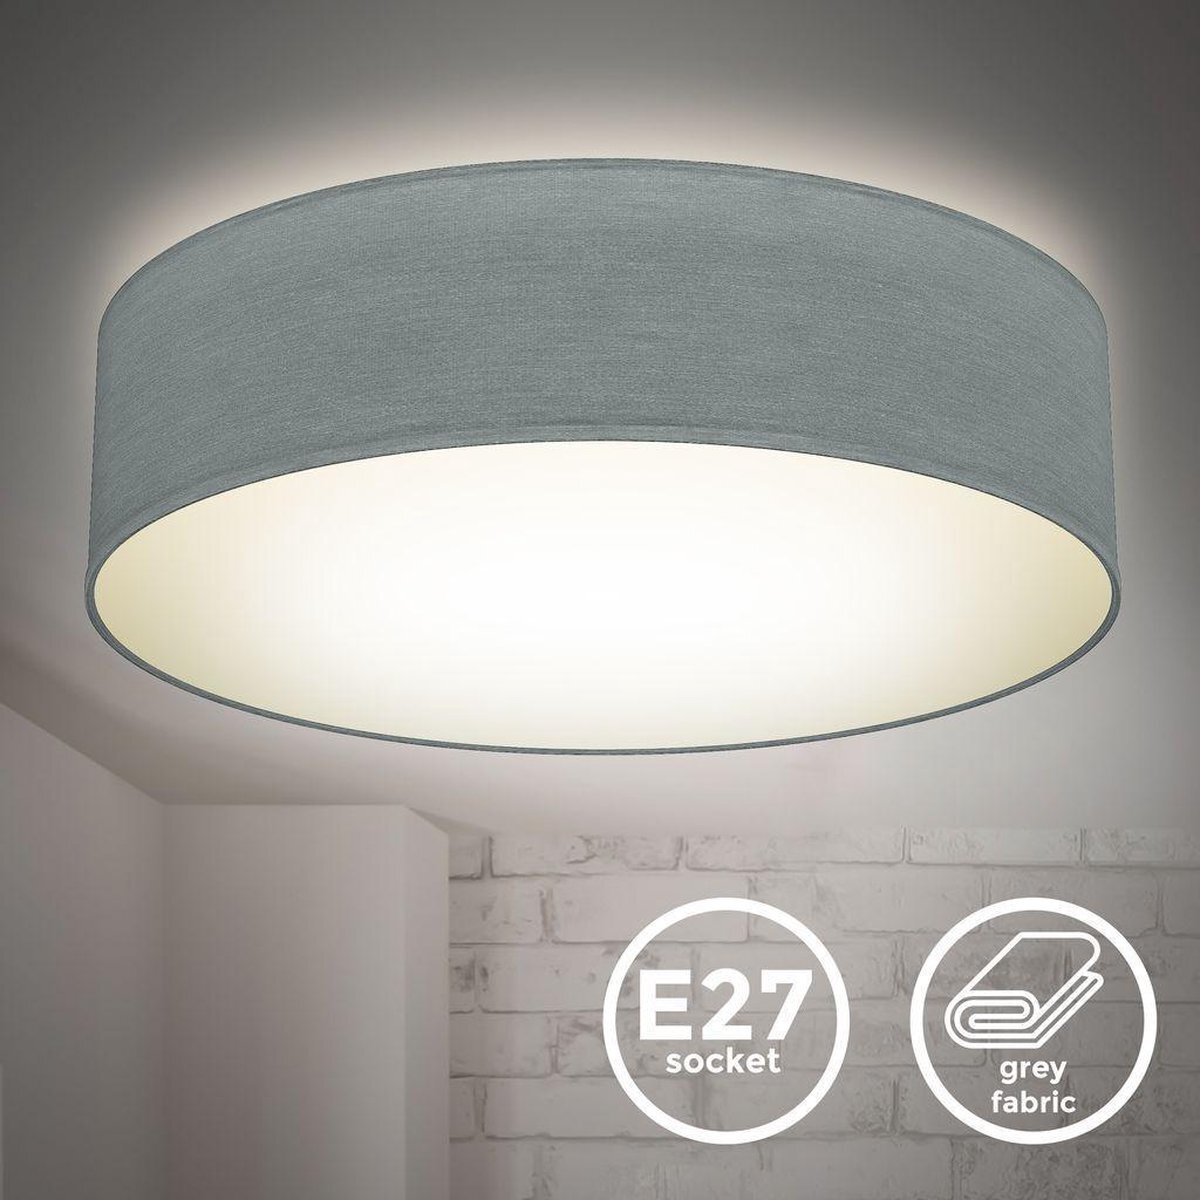 B.K.Licht - Decoratieve Plafondlamp - Ø38cm - modern - voor binnen - grijs - met E27 fitting - excl. lichtbronnen